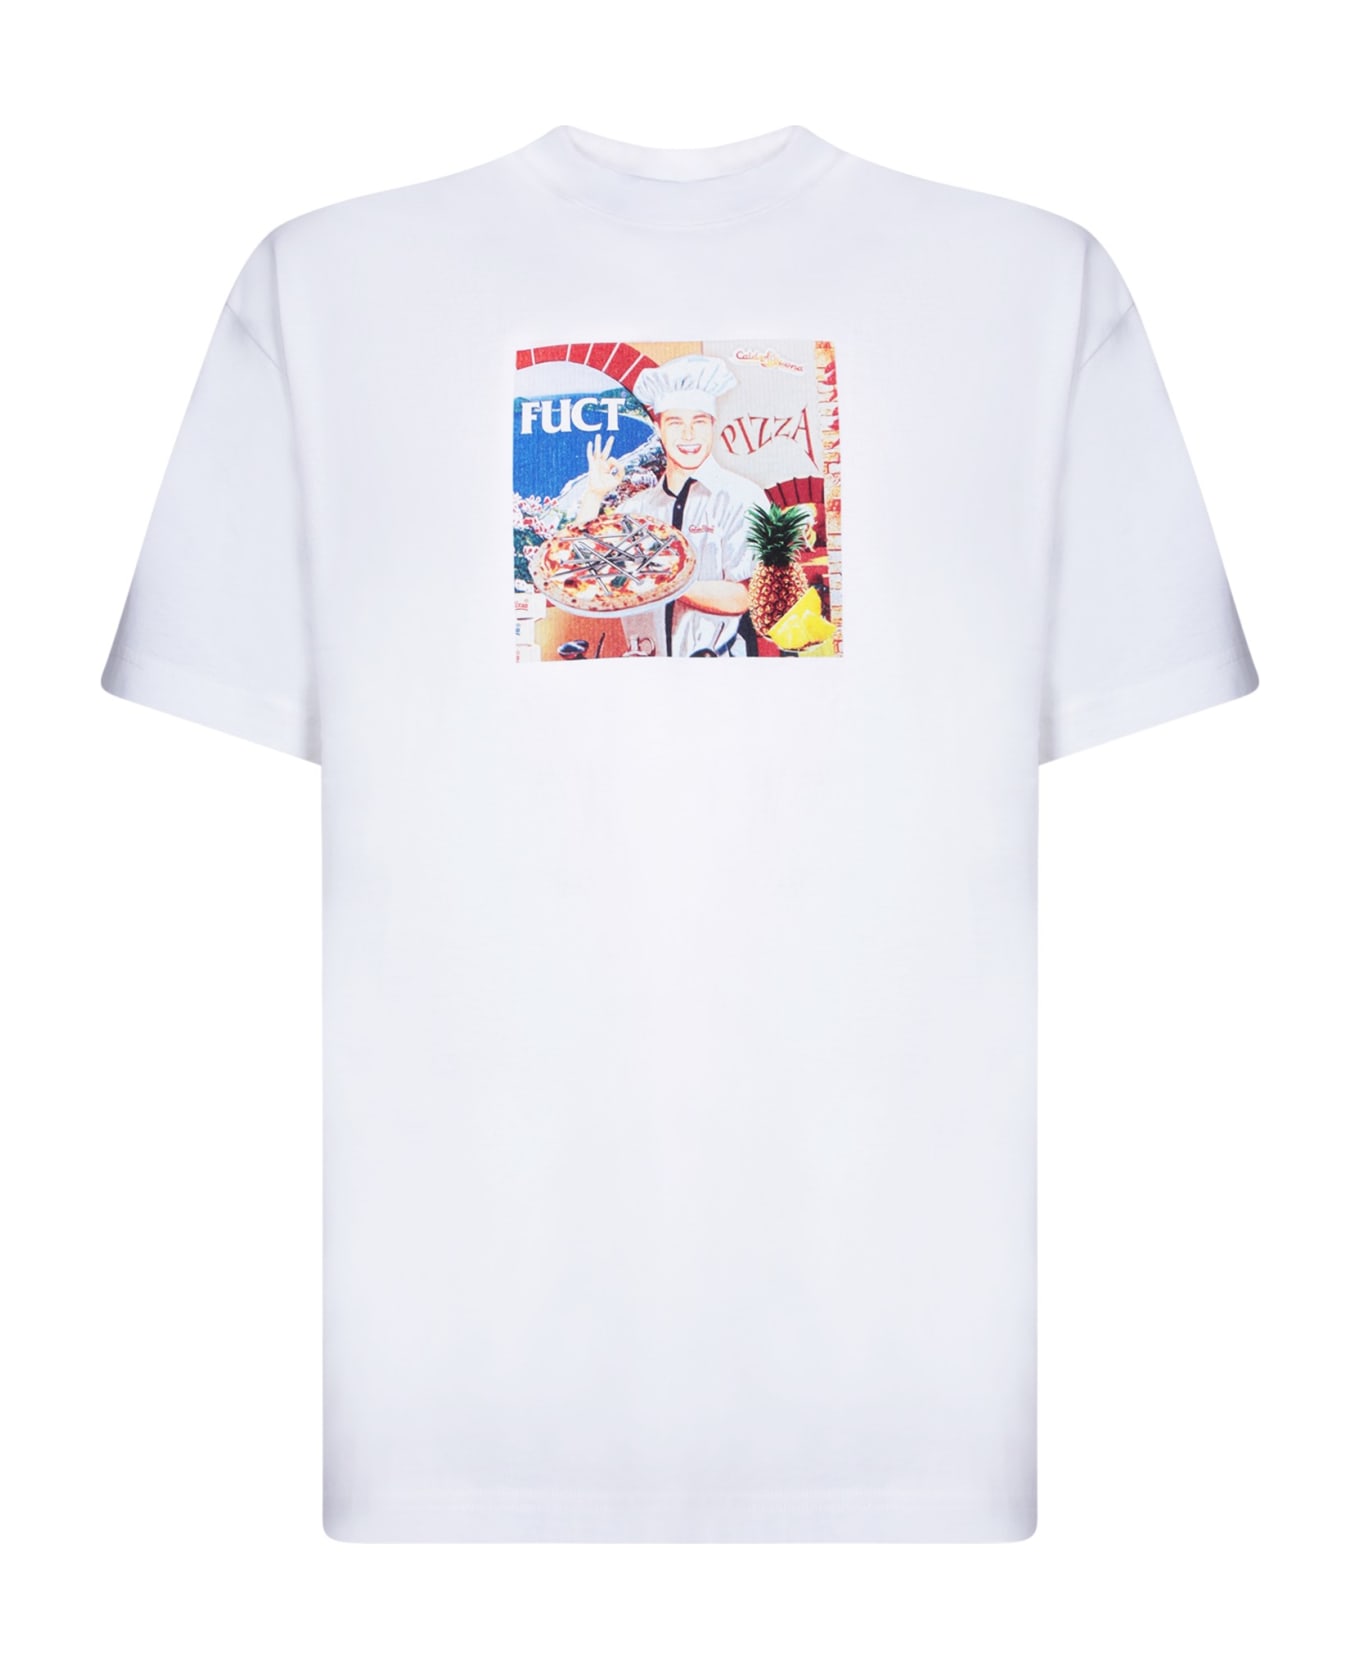 Fuct Pizza White T-shirt - White